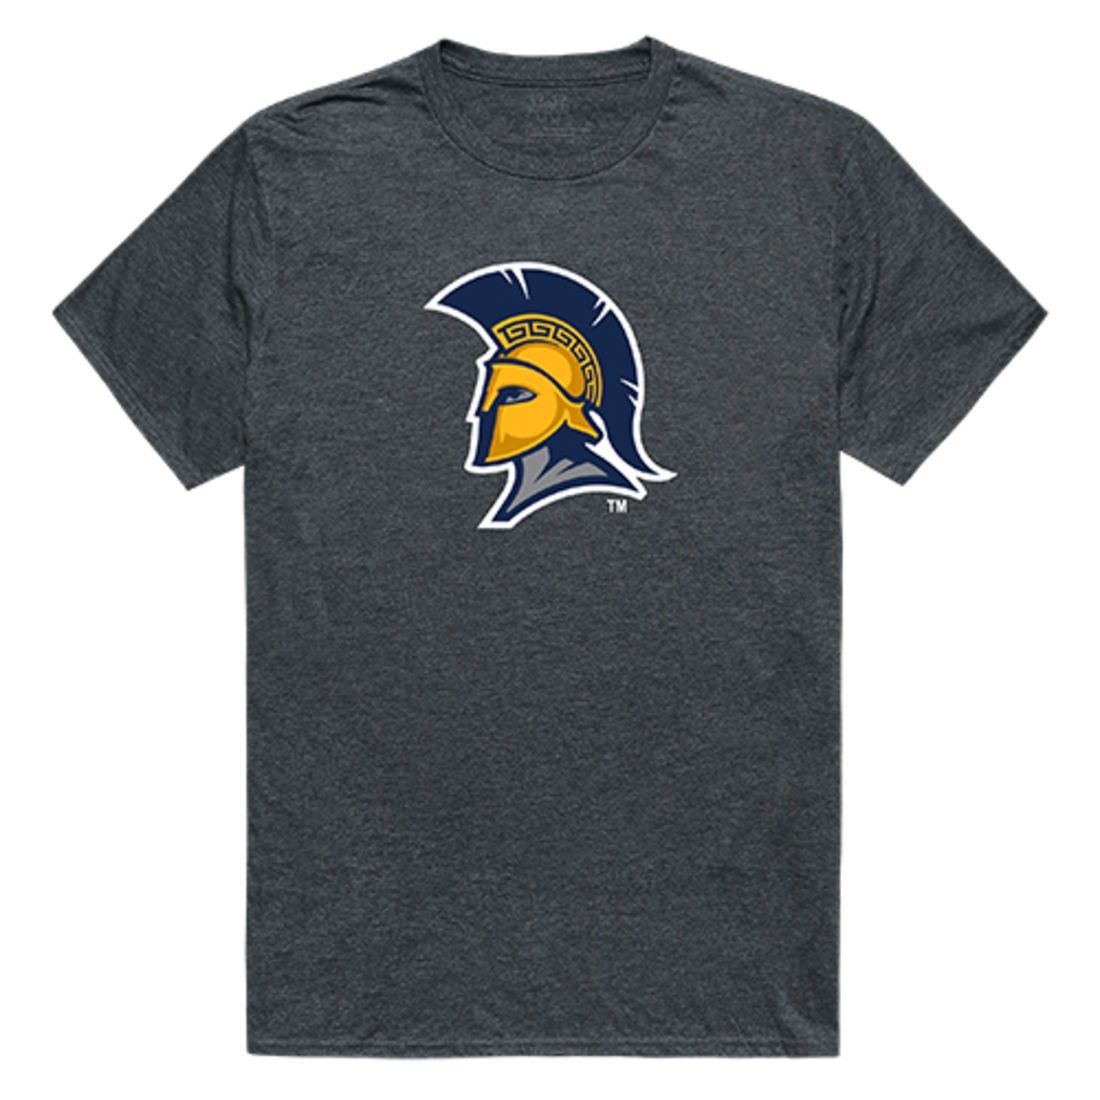 UNCG University of North Carolina at Greensboro Spartans Cinder T-Shirt Heather Charcoal-Campus-Wardrobe